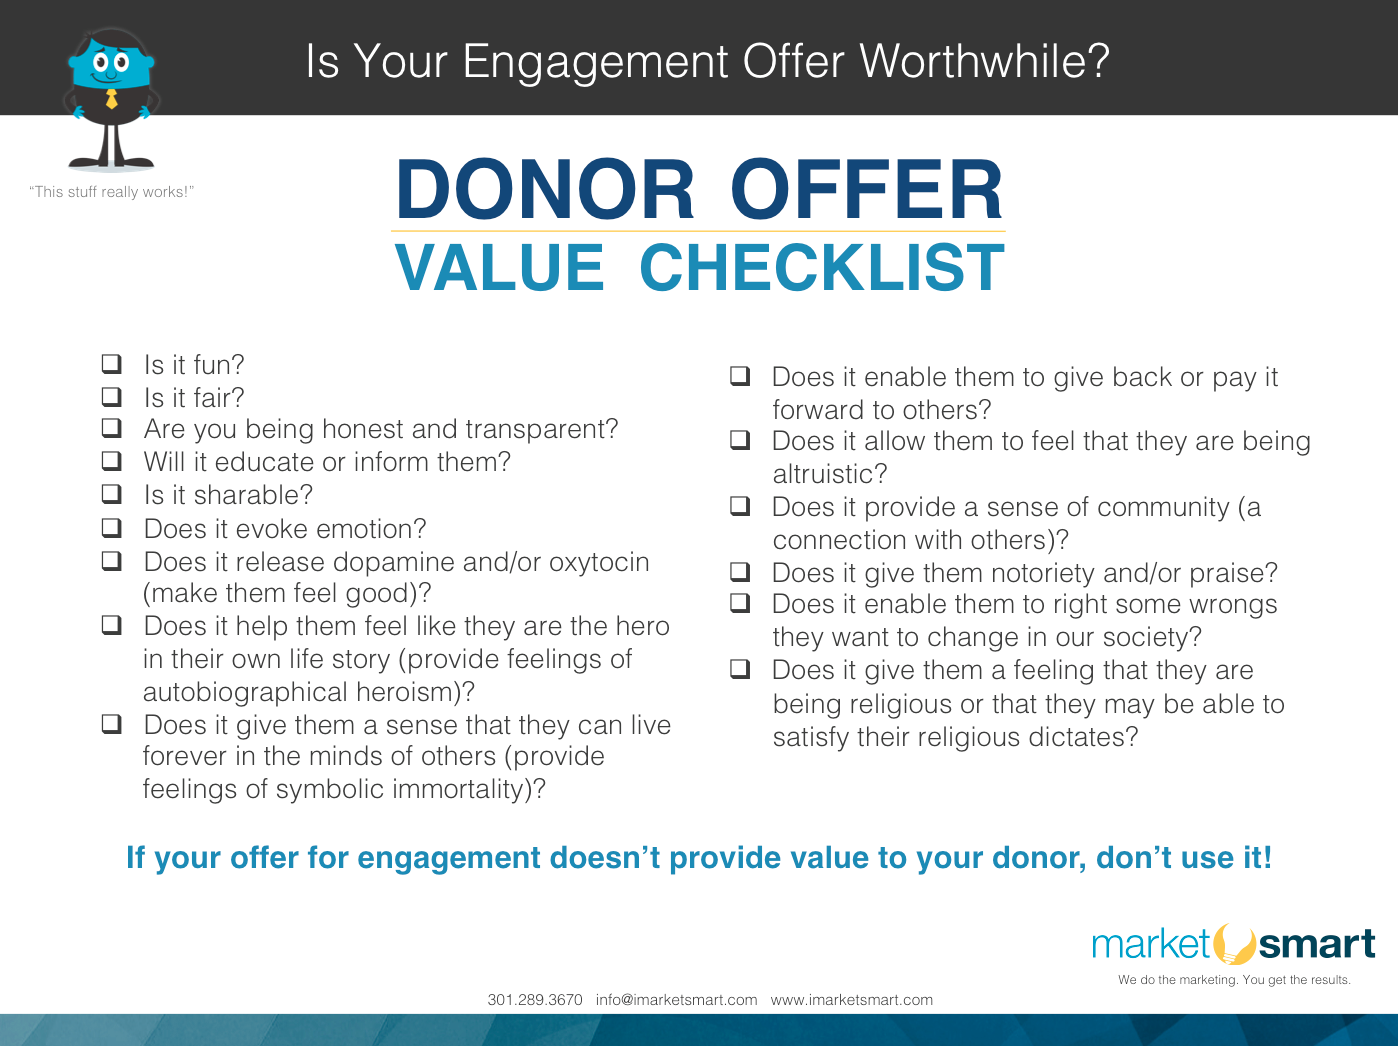 Fundraising offer value checklist